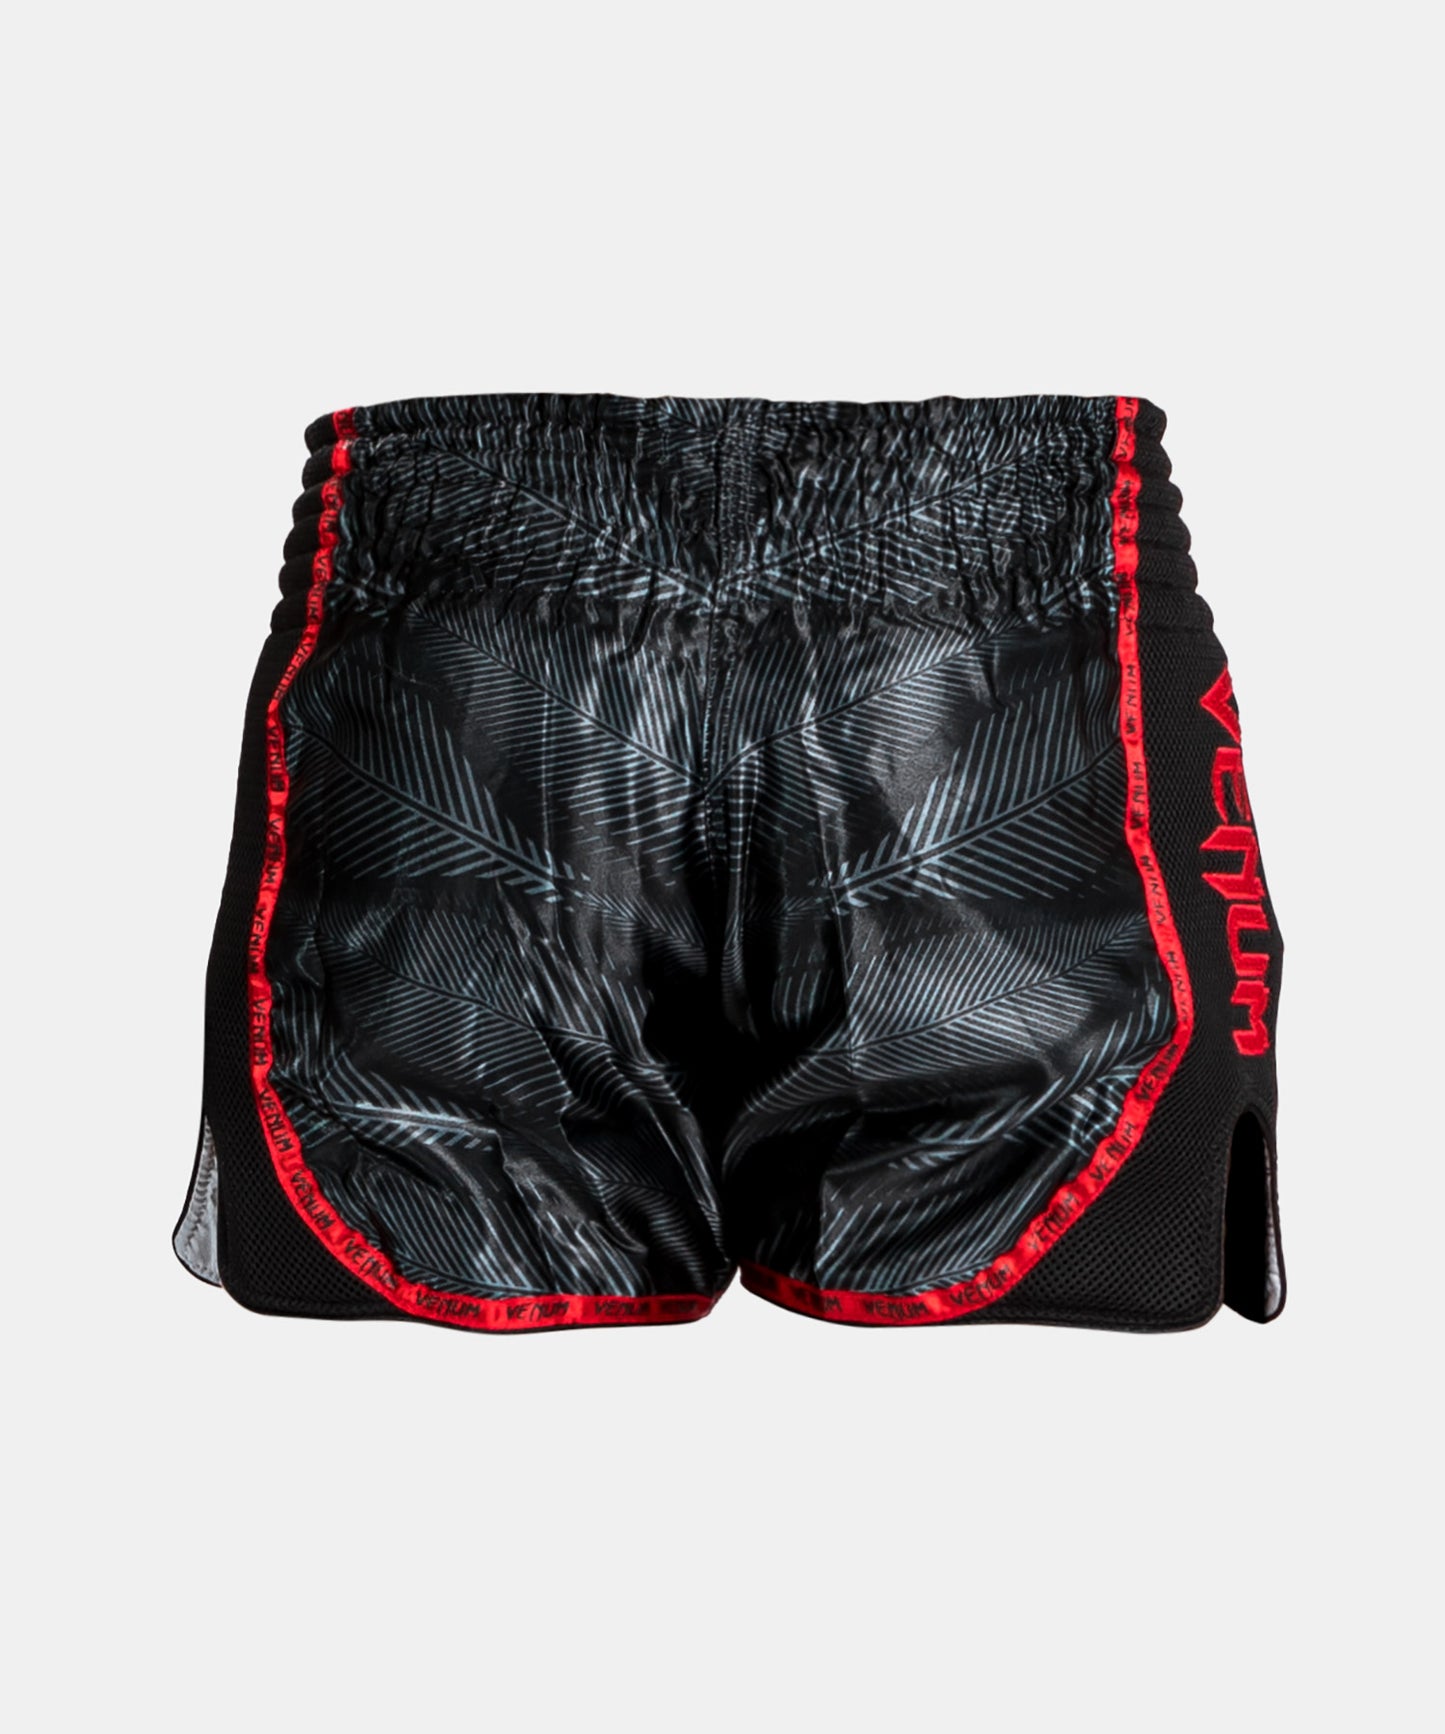 Pantalones De Boxeo Venum Phantom negro / rojo > Envío Gratis